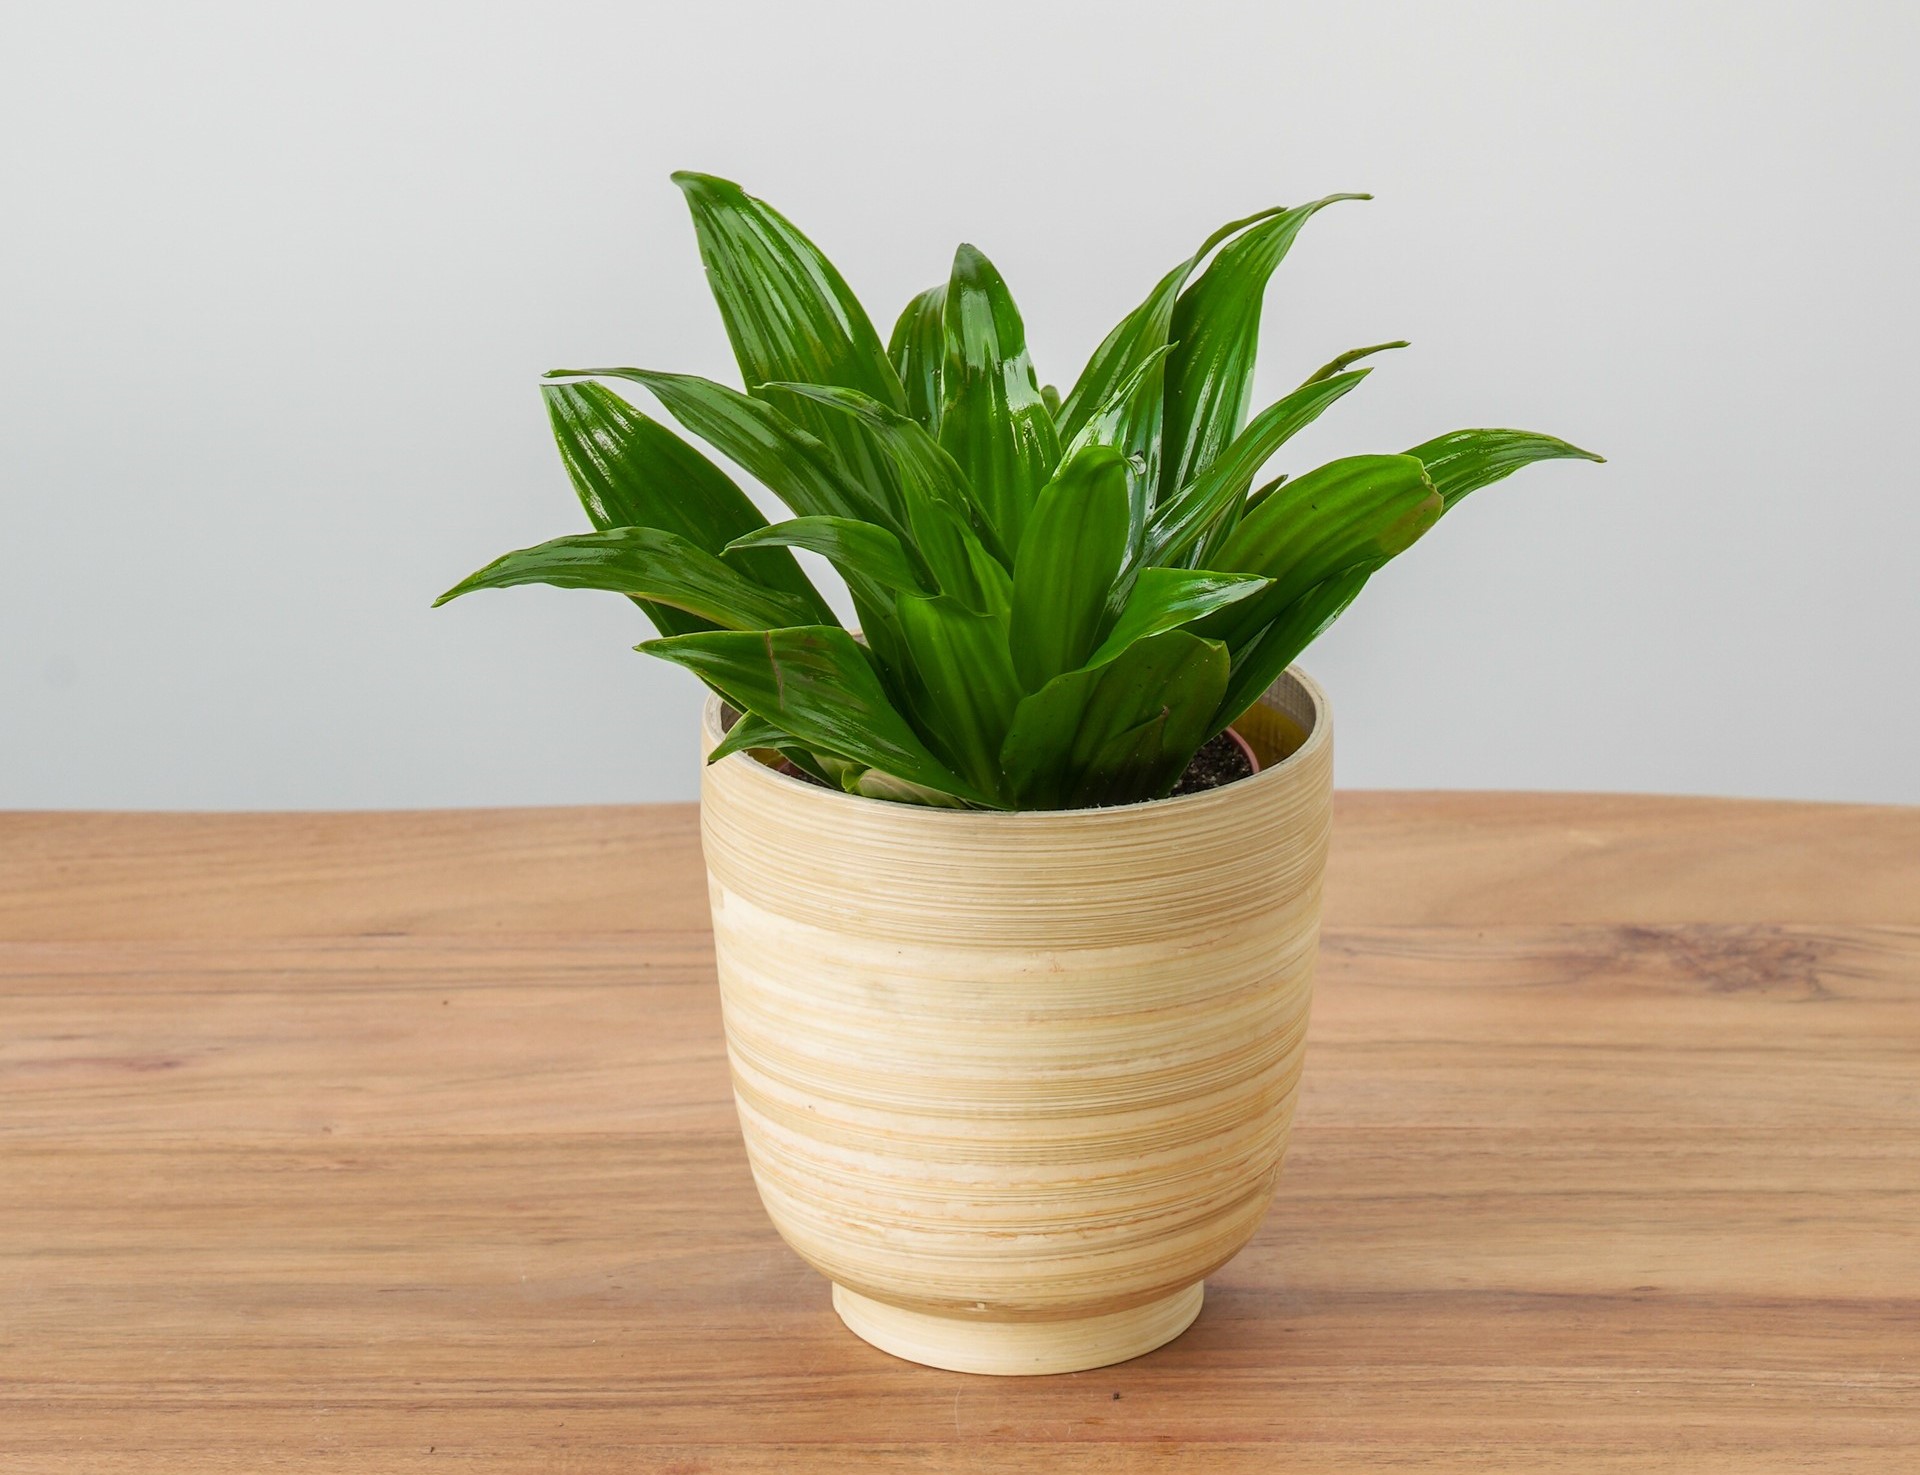 Small Dracaena plant in pot